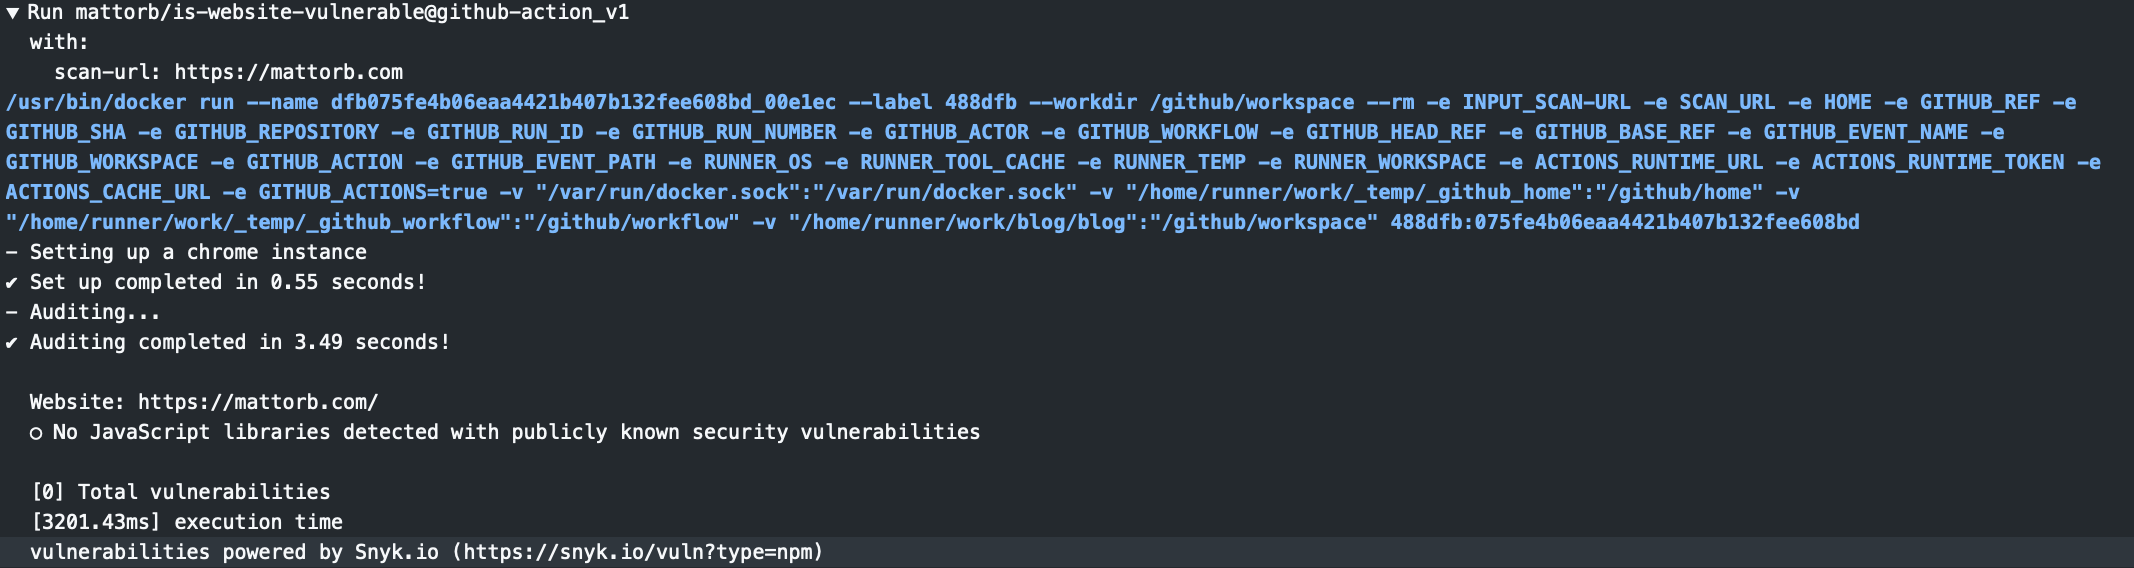 Github Action for Javascript Vulnerability Scanning